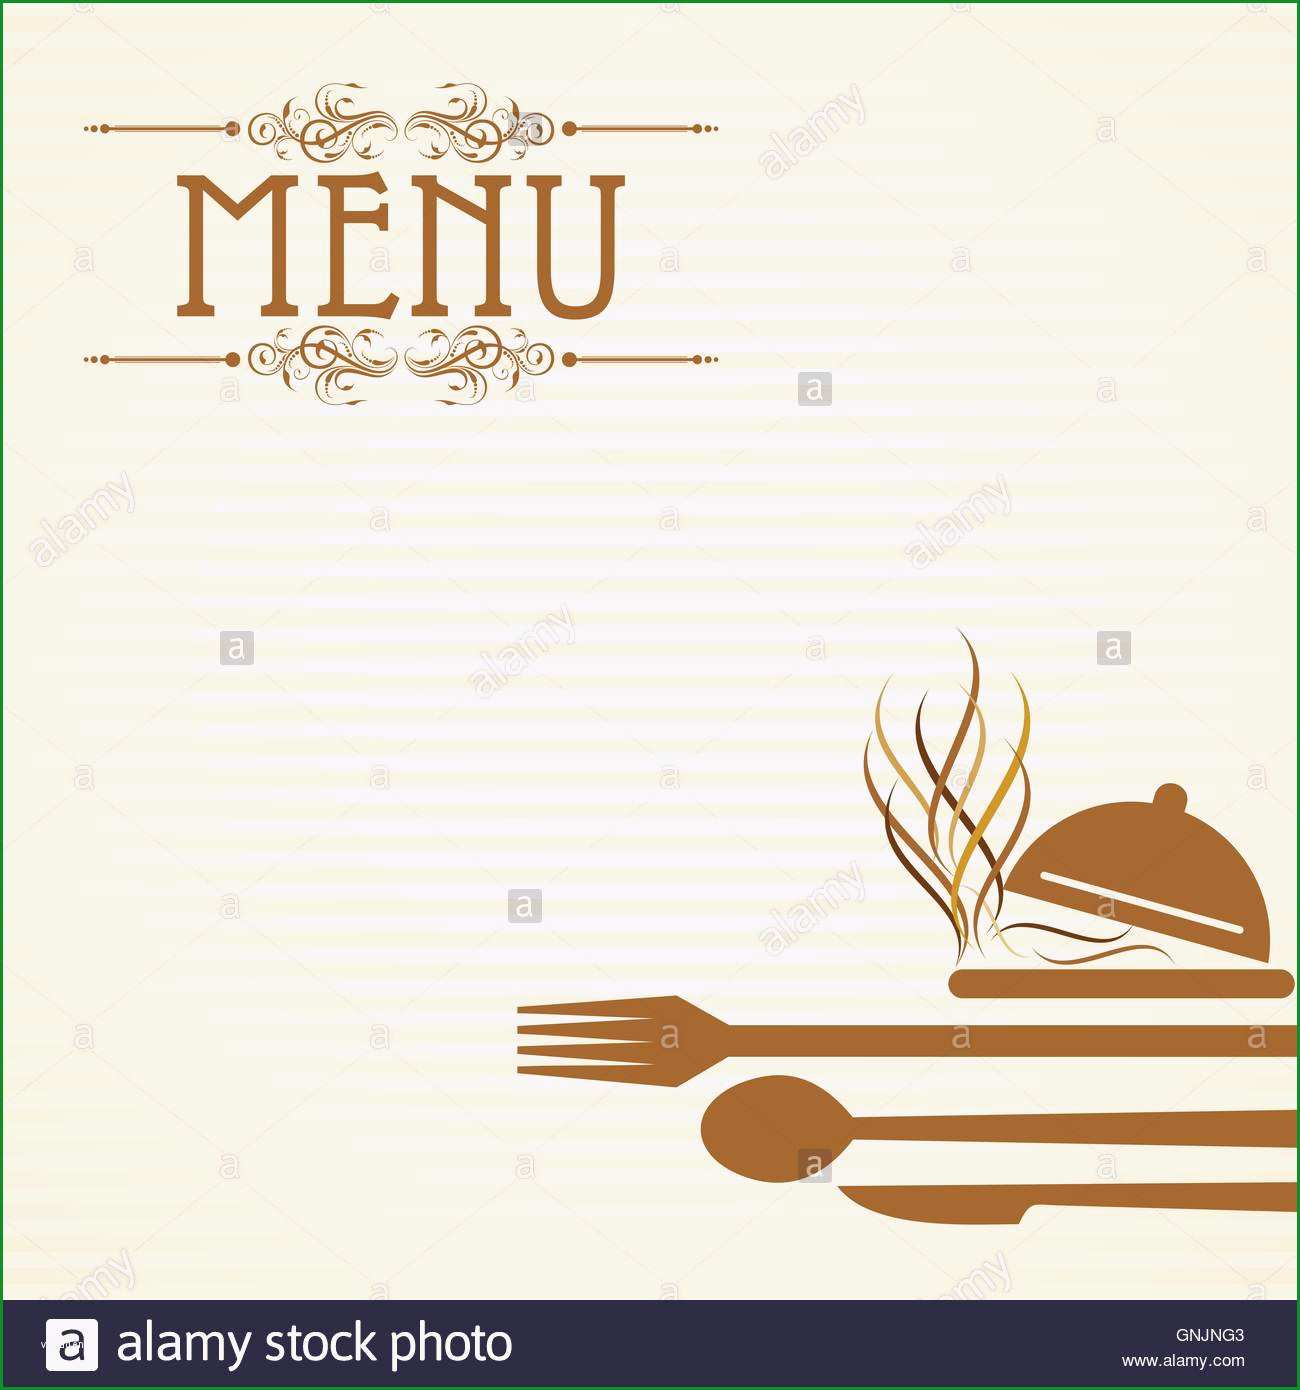 stockfoto illustration der vorlage fur menukarte mit besteck